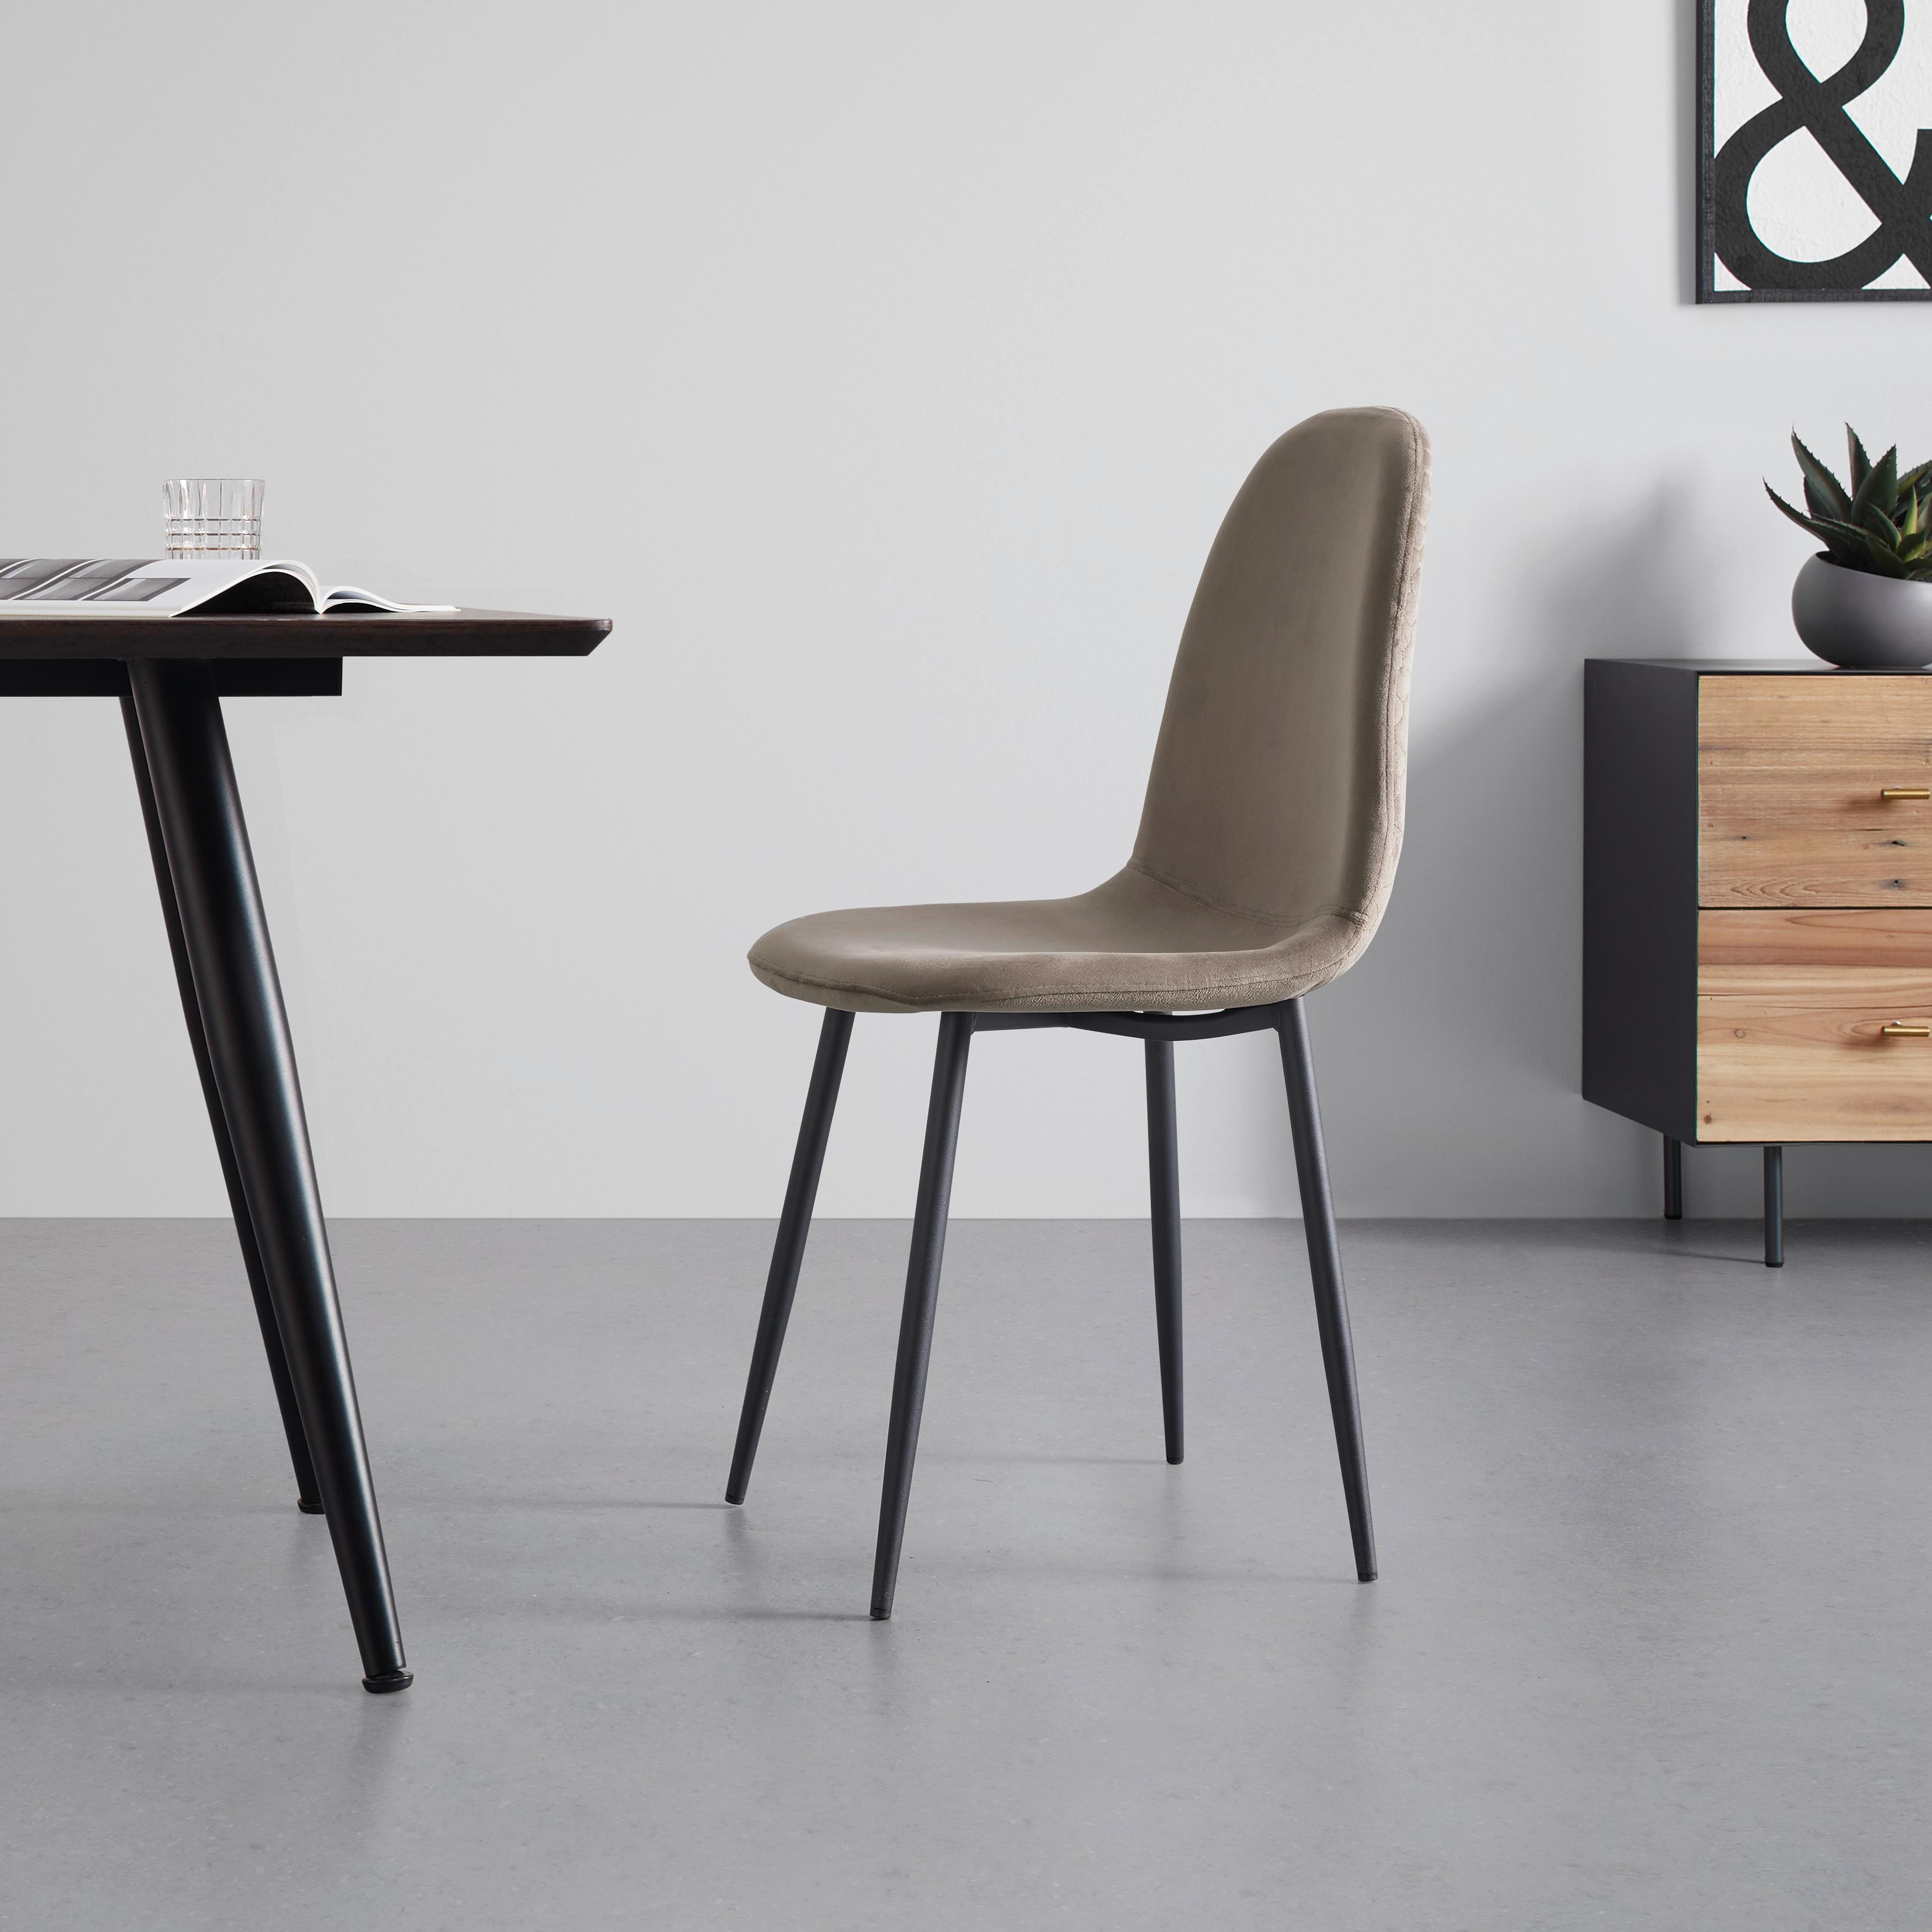 Jídelní Židle Ida Hnědá - černá/hnědá, Moderní, kov/dřevo (44/89/41,5cm) - Modern Living